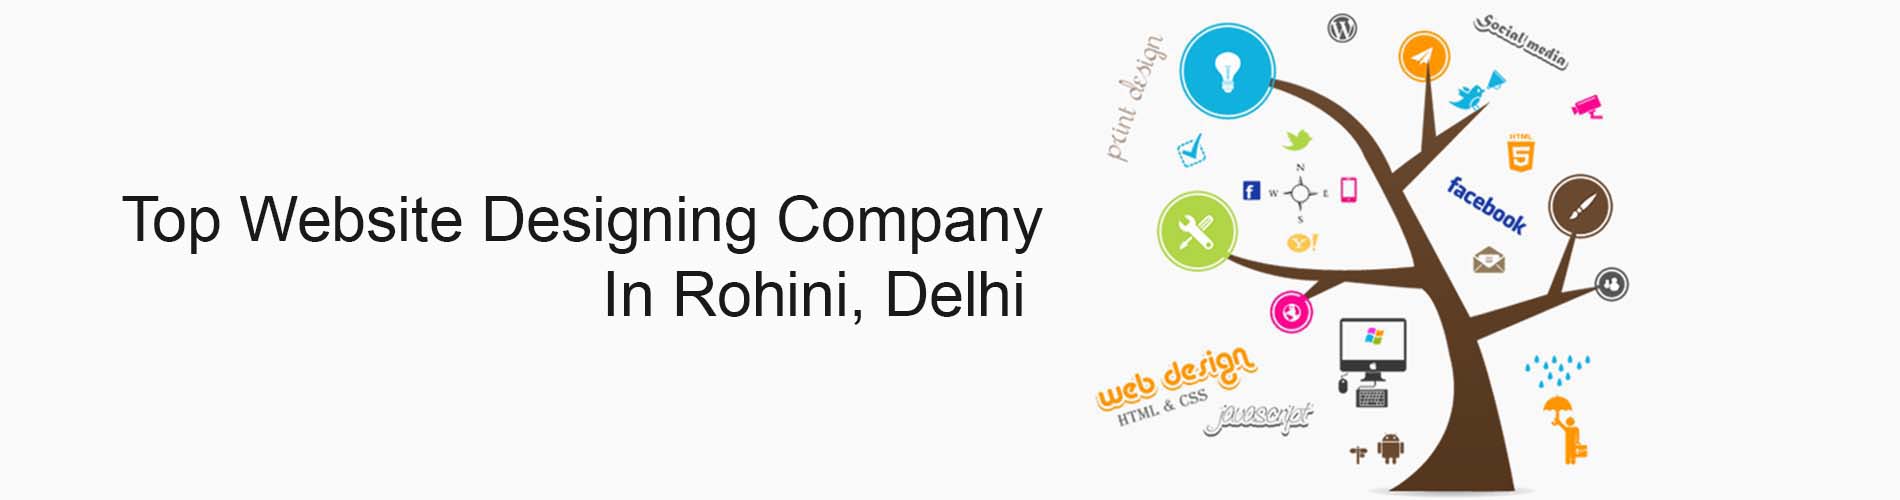 web designing company in rohini delhi